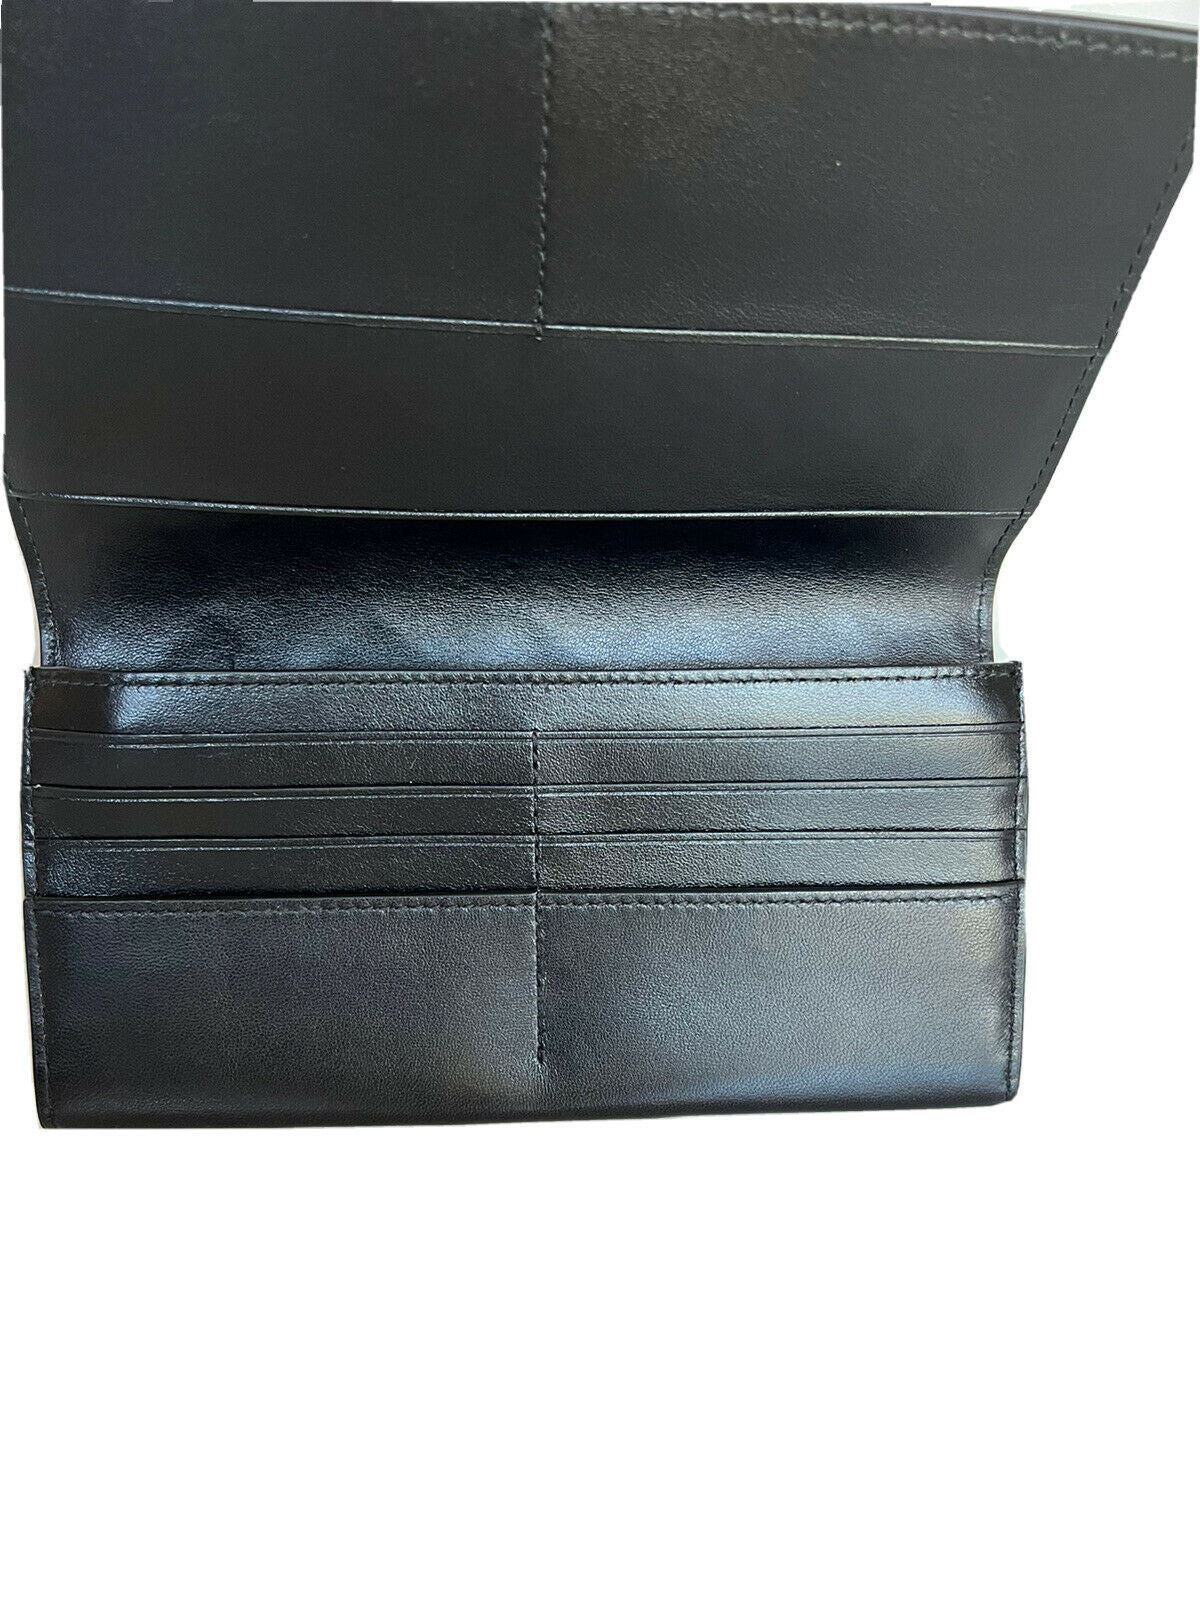 NWT $760 Bottega Veneta Nappa19 Кожаный кошелек для карт Черный 591365 Италия 